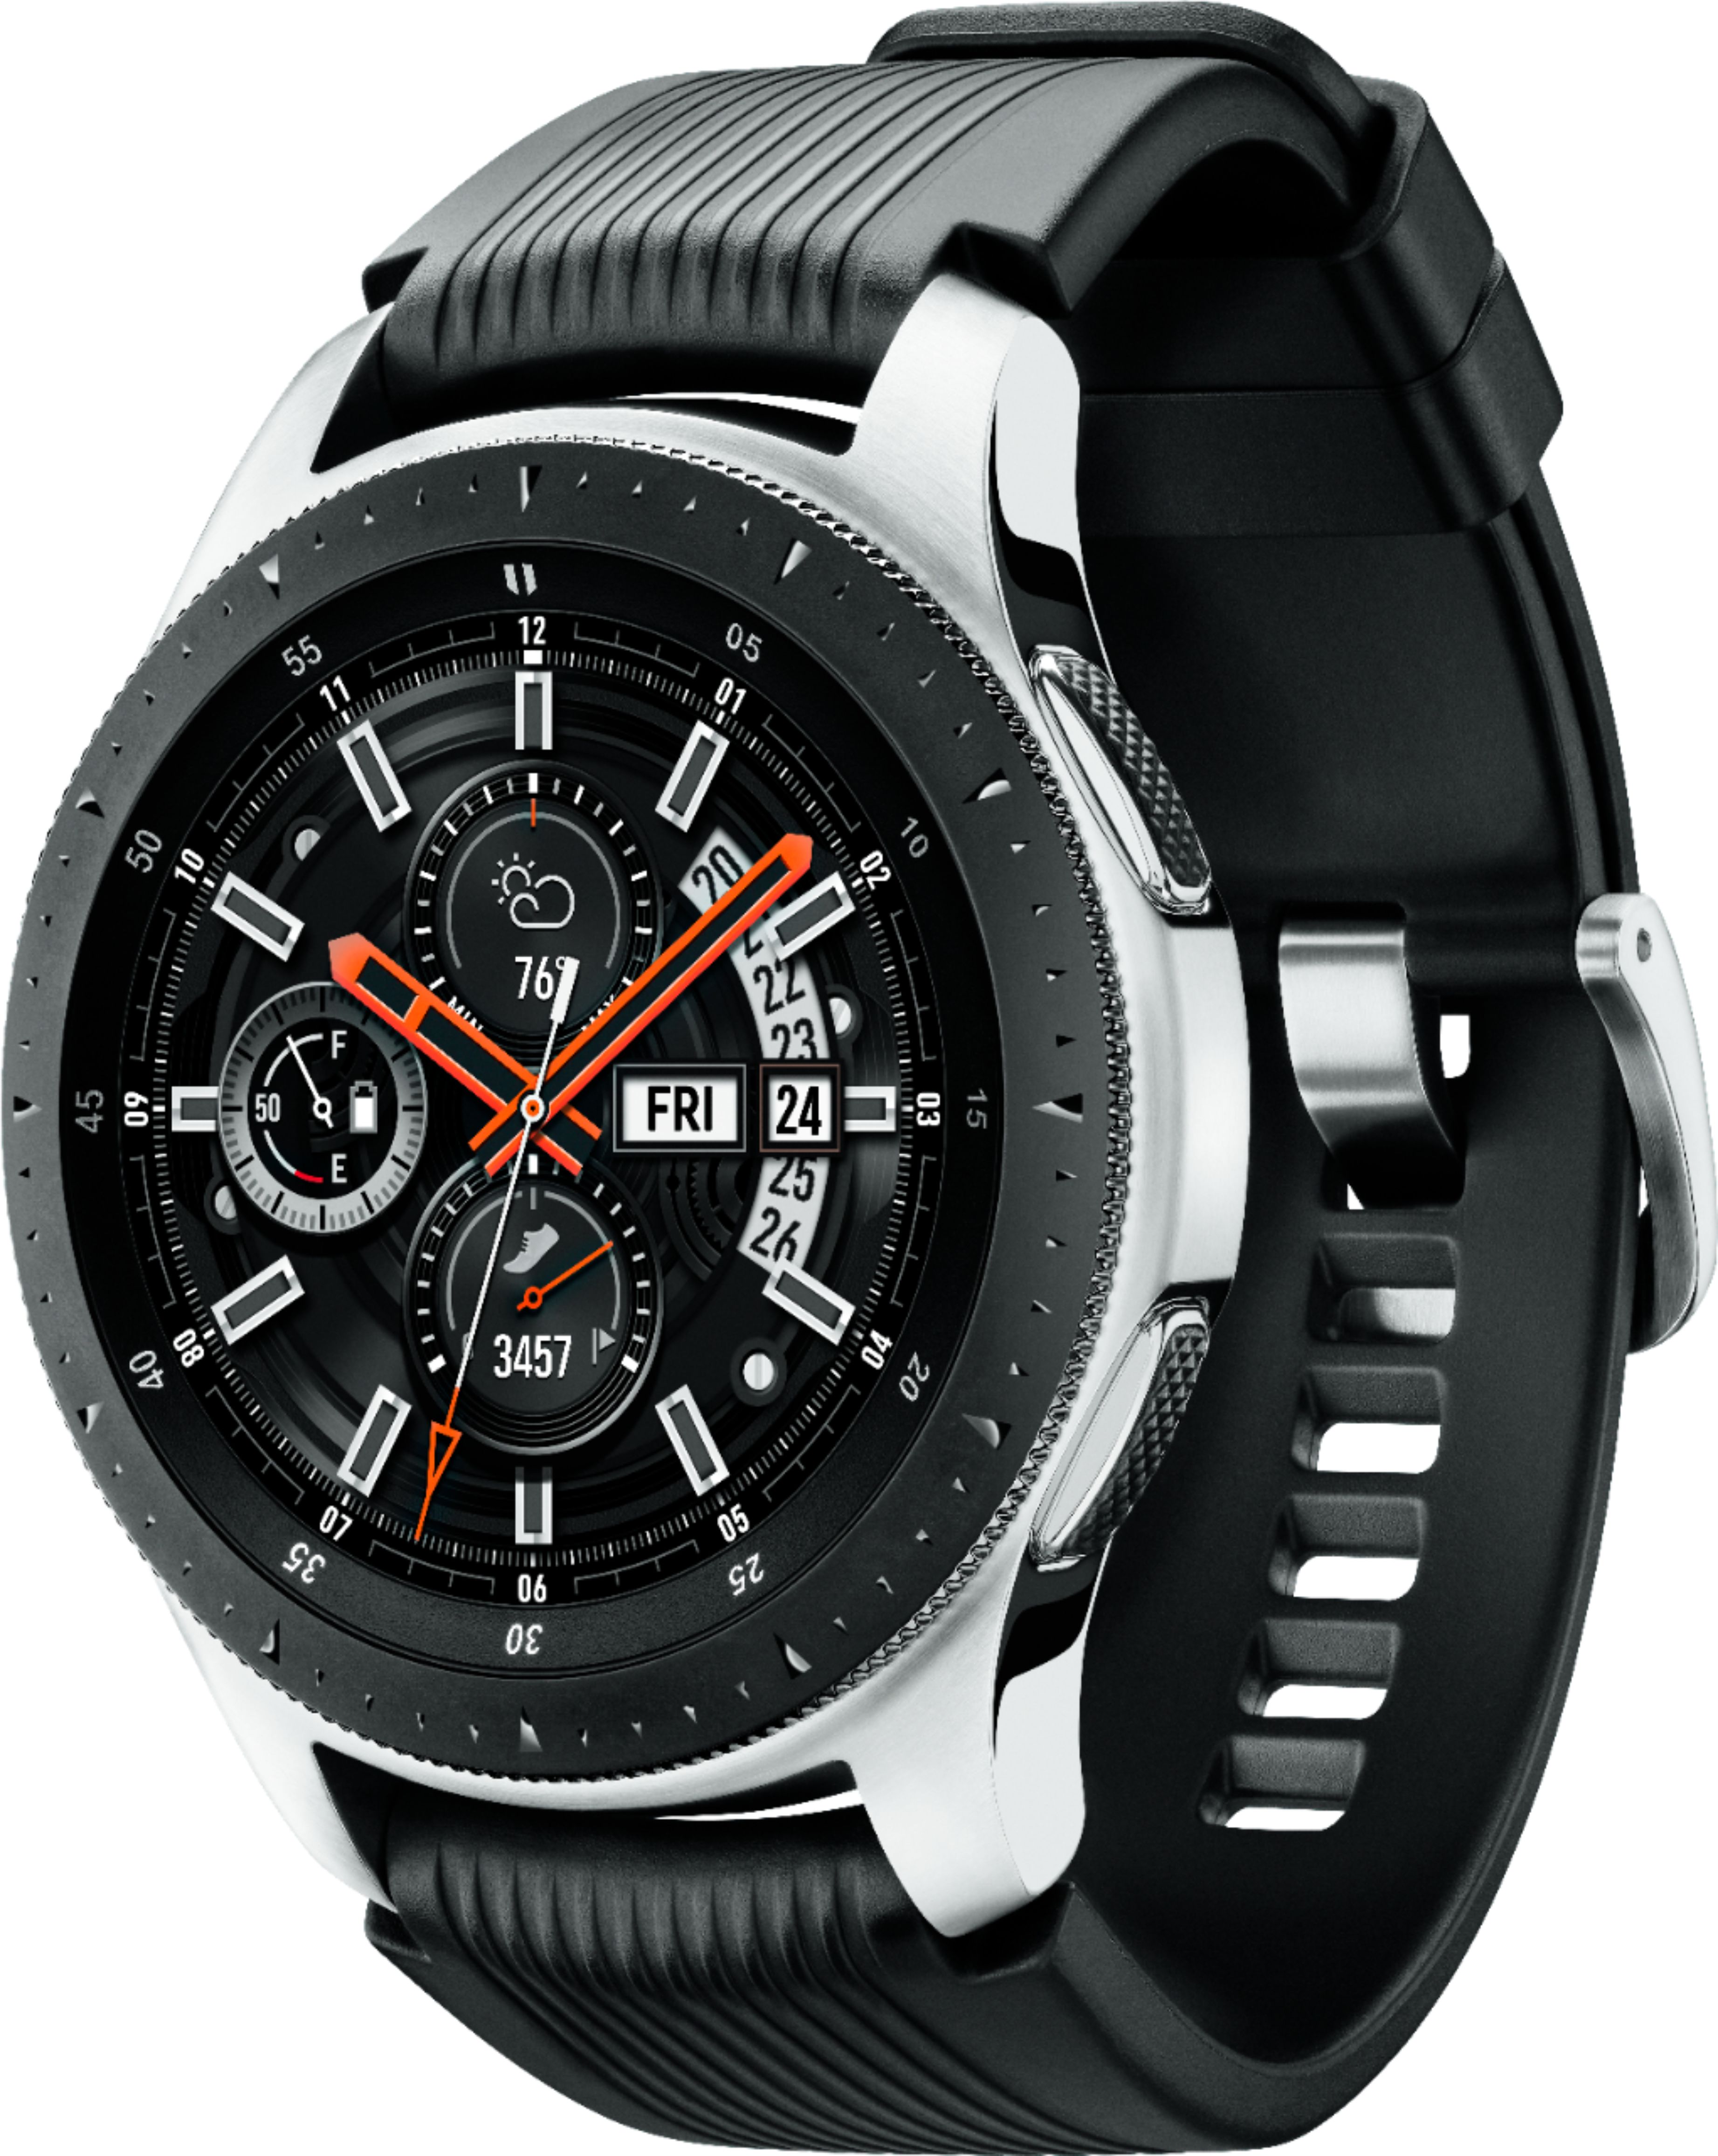 Samsung Galaxy Watch Smartwatch 46mm Stainless Steel Silver SM-R800NZSAXAR  - Best Buy